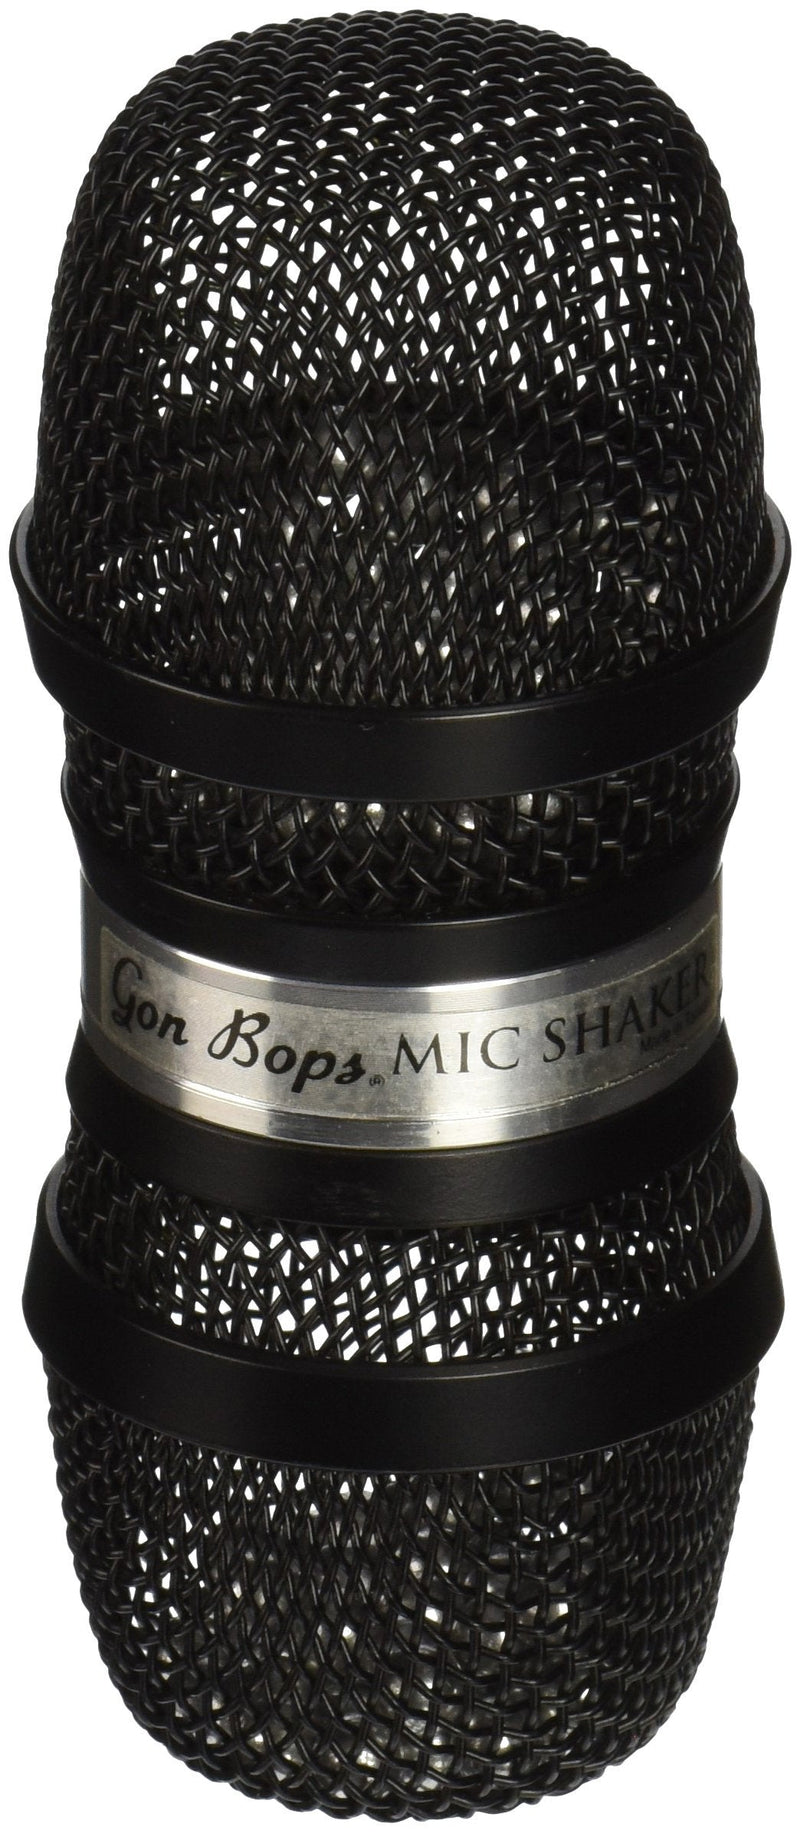 Gon Bops -Black Mic Shaker